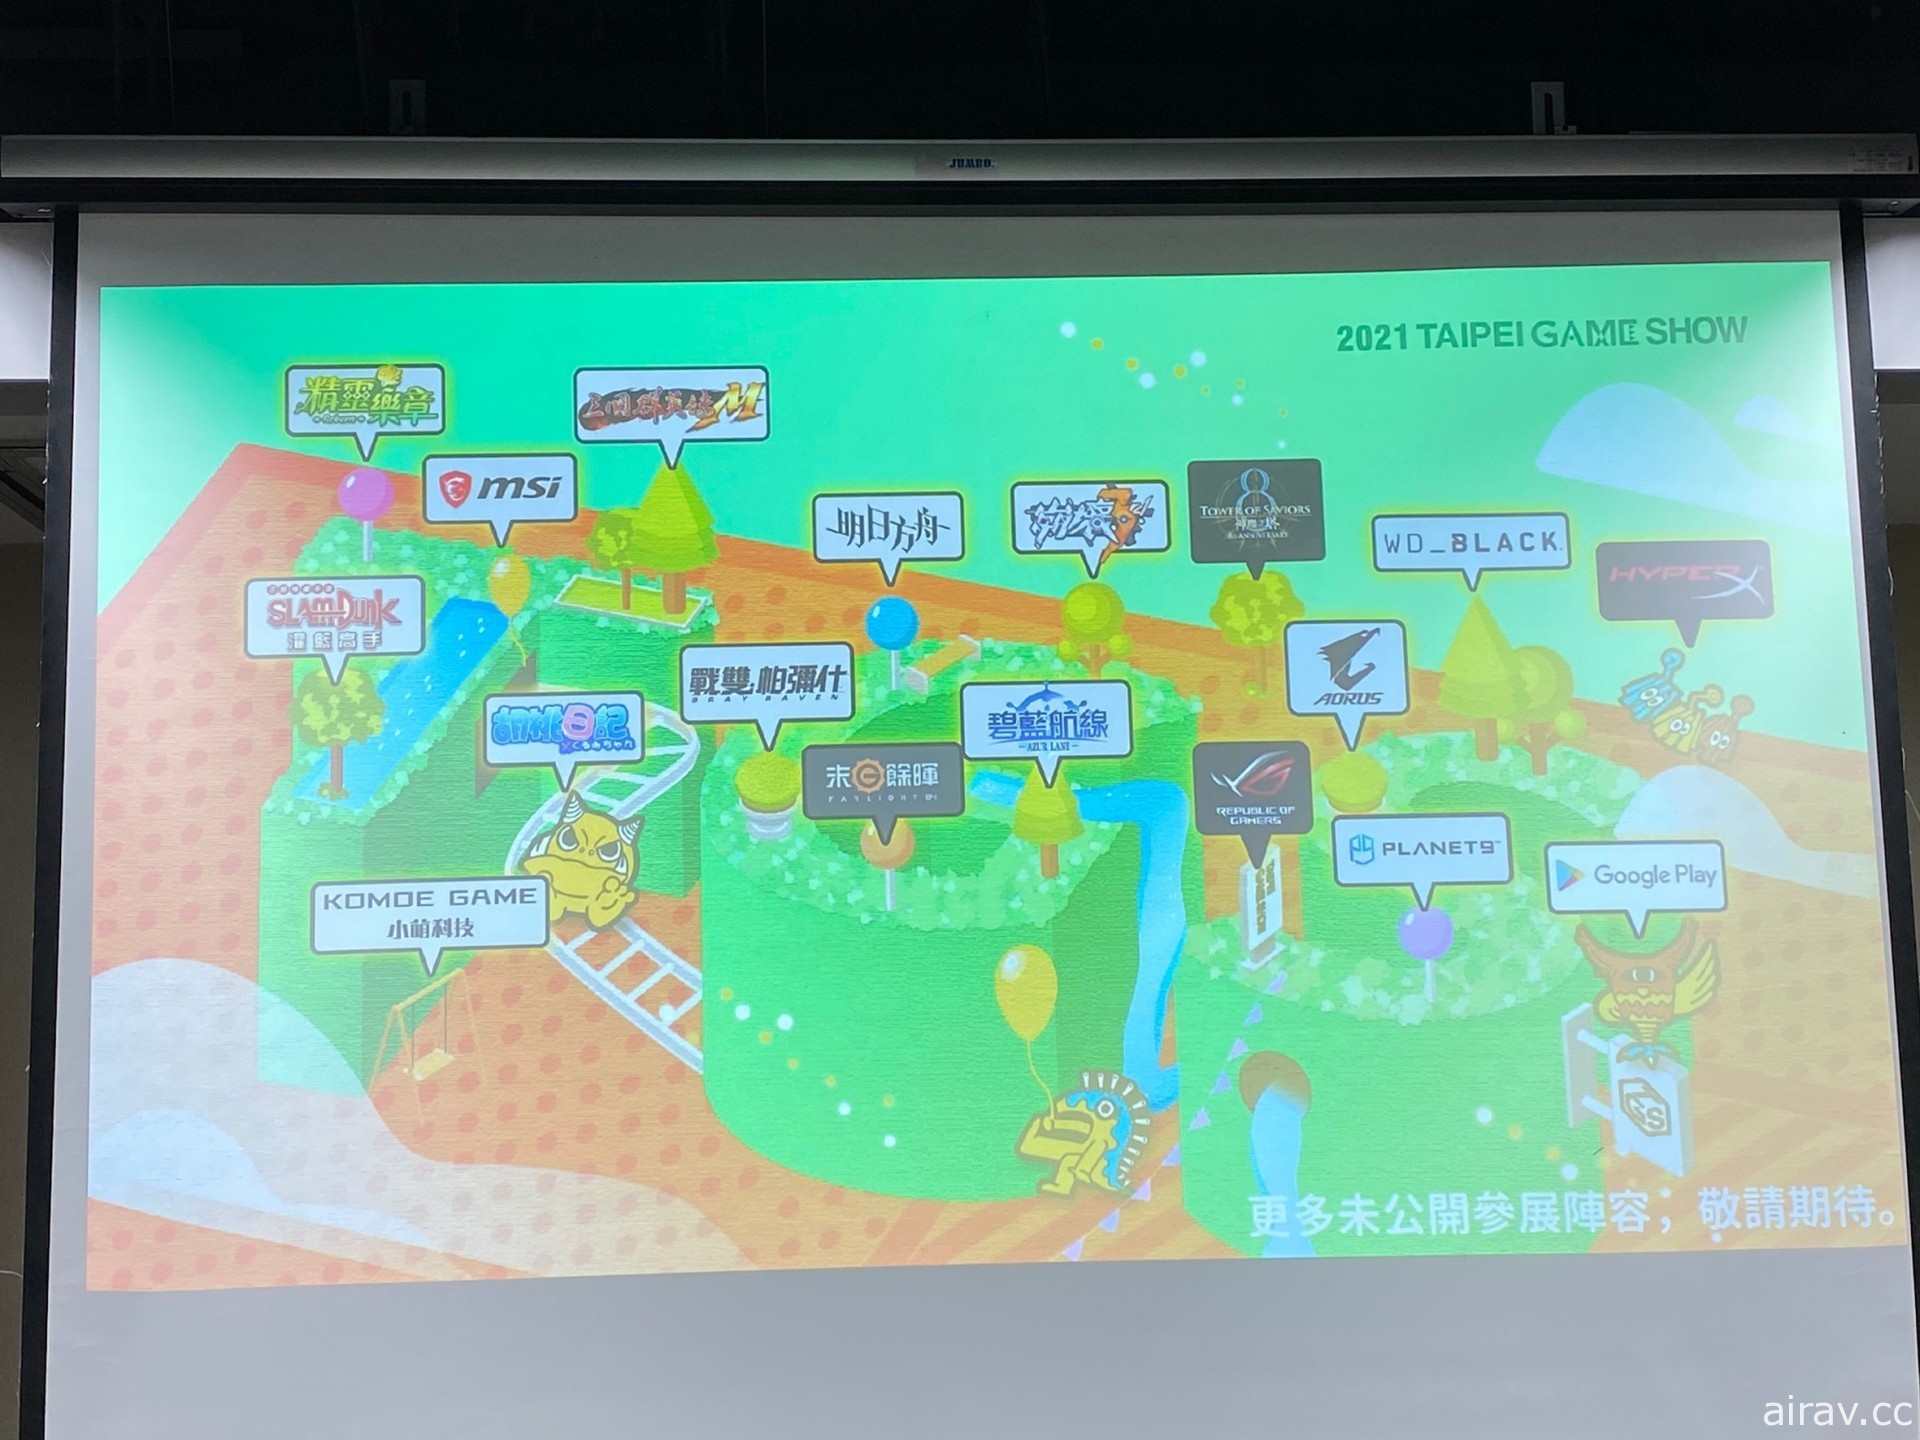 【TpGS 21】疫情升溫　Google Play 等部分廠商退出台北電玩展